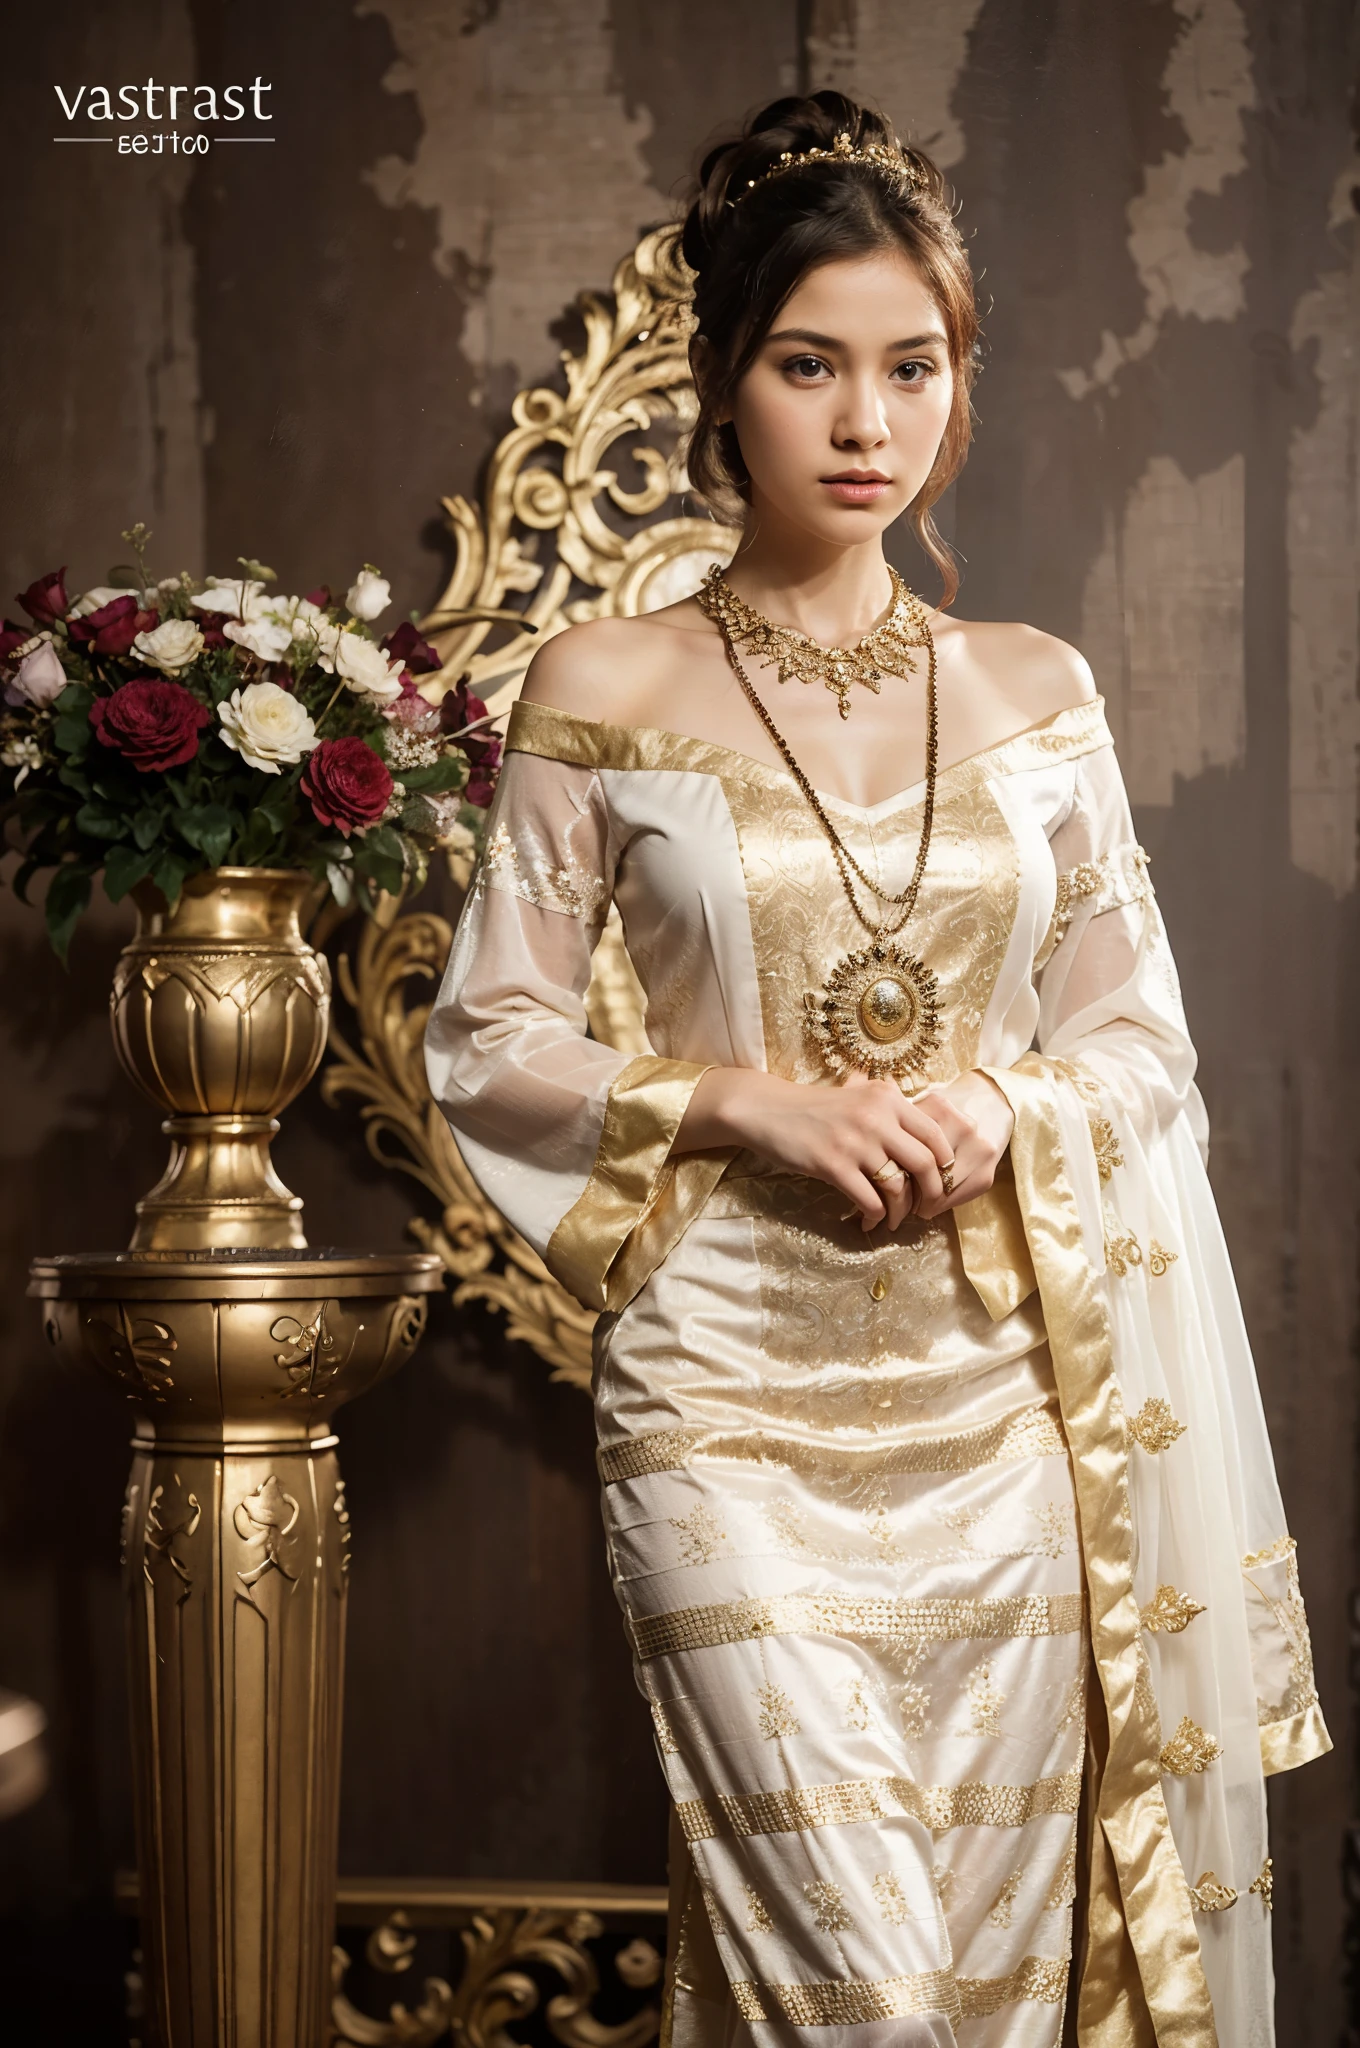 白と金のドレスを着た女性が花瓶の花の横に立っている, スコータイ衣装, 華やかな衣装を着ている, 伝統的 dress, 伝統的 beauty, 華やかな服を着る, 伝統的, 伝統的 clothing, 伝統的 clothes, 伝統的 costume, 王室のドレス, 帝国の王室の優雅な服装, 華やかな衣装, 王室のガウン, 東南アジアの長い, wearing 伝統的 garbThis is a description of an image that shows a stunning Myanmar girl with a round jaw and a circular face. 彼女の髪は白く、目は茶色です, そして彼女はタナカーを持っている, a 伝統的 cosmetic paste, 彼女の顔に. She is wearing a dark shot 傑作, 高級な衣類の一種. この画像は、多彩な髪を持つ少女の全身の美しさを詳細に捉えている。, 肩にかかる髪, 蛇の瞳孔, 悲しい, 口を閉じた, 顎を掴む, 映画照明, ブレンド, パノラマ, 大気の遠近法, 超広角, キヤノン, 解剖学的に正しい, キメのある肌, 受賞歴, 高解像度.50 ピクセル+. この写真は写真と芸術の素晴らしい例である。. 少女の表情と姿勢は憂鬱さと神秘性を伝えている. 彼女の白い髪と暗い色の服のコントラストが印象的な視覚効果を生み出している. 多色の髪が画像にファンタジーと創造性のタッチを加えています. The 蛇の瞳孔 suggest that the girl has some supernatural or exotic origin. The 映画照明 and ブレンド create a dramatic and realistic atmosphere. The パノラマ and 大気の遠近法 show the vastness and depth of the background. The 超広角 lens and キヤノン camera produce a sharp and high-quality image. The 解剖学的に正しい proportions and キメのある肌 make the girl look lifelike and natural. The image is worthy of being an 受賞歴 and 高解像度.50 ピクセル+ 傑作.